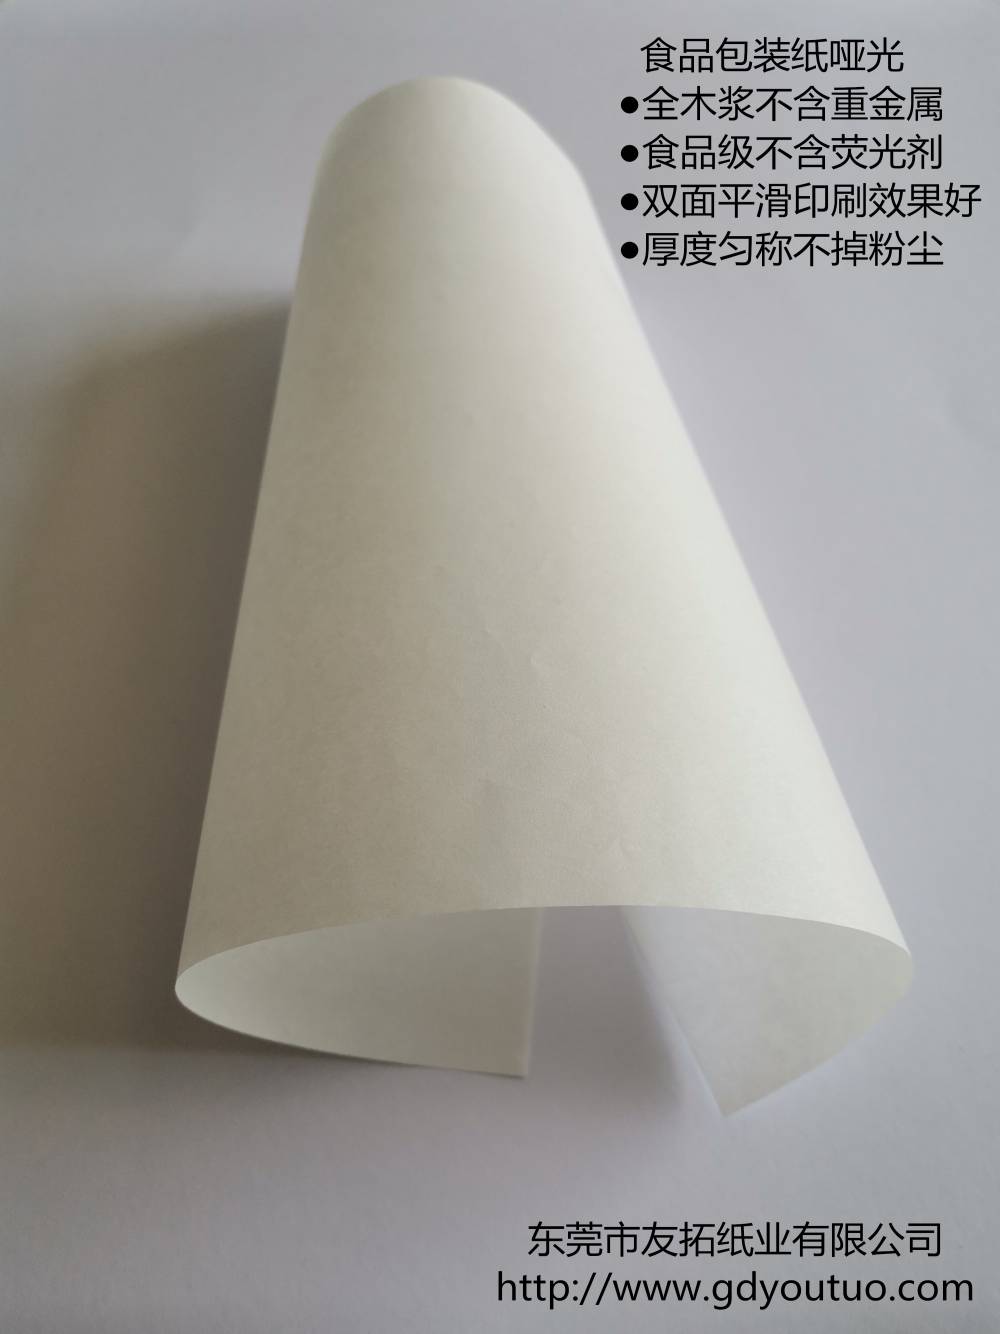 双面光白牛皮纸30至120克适合高档包装印刷可订做切任意规格